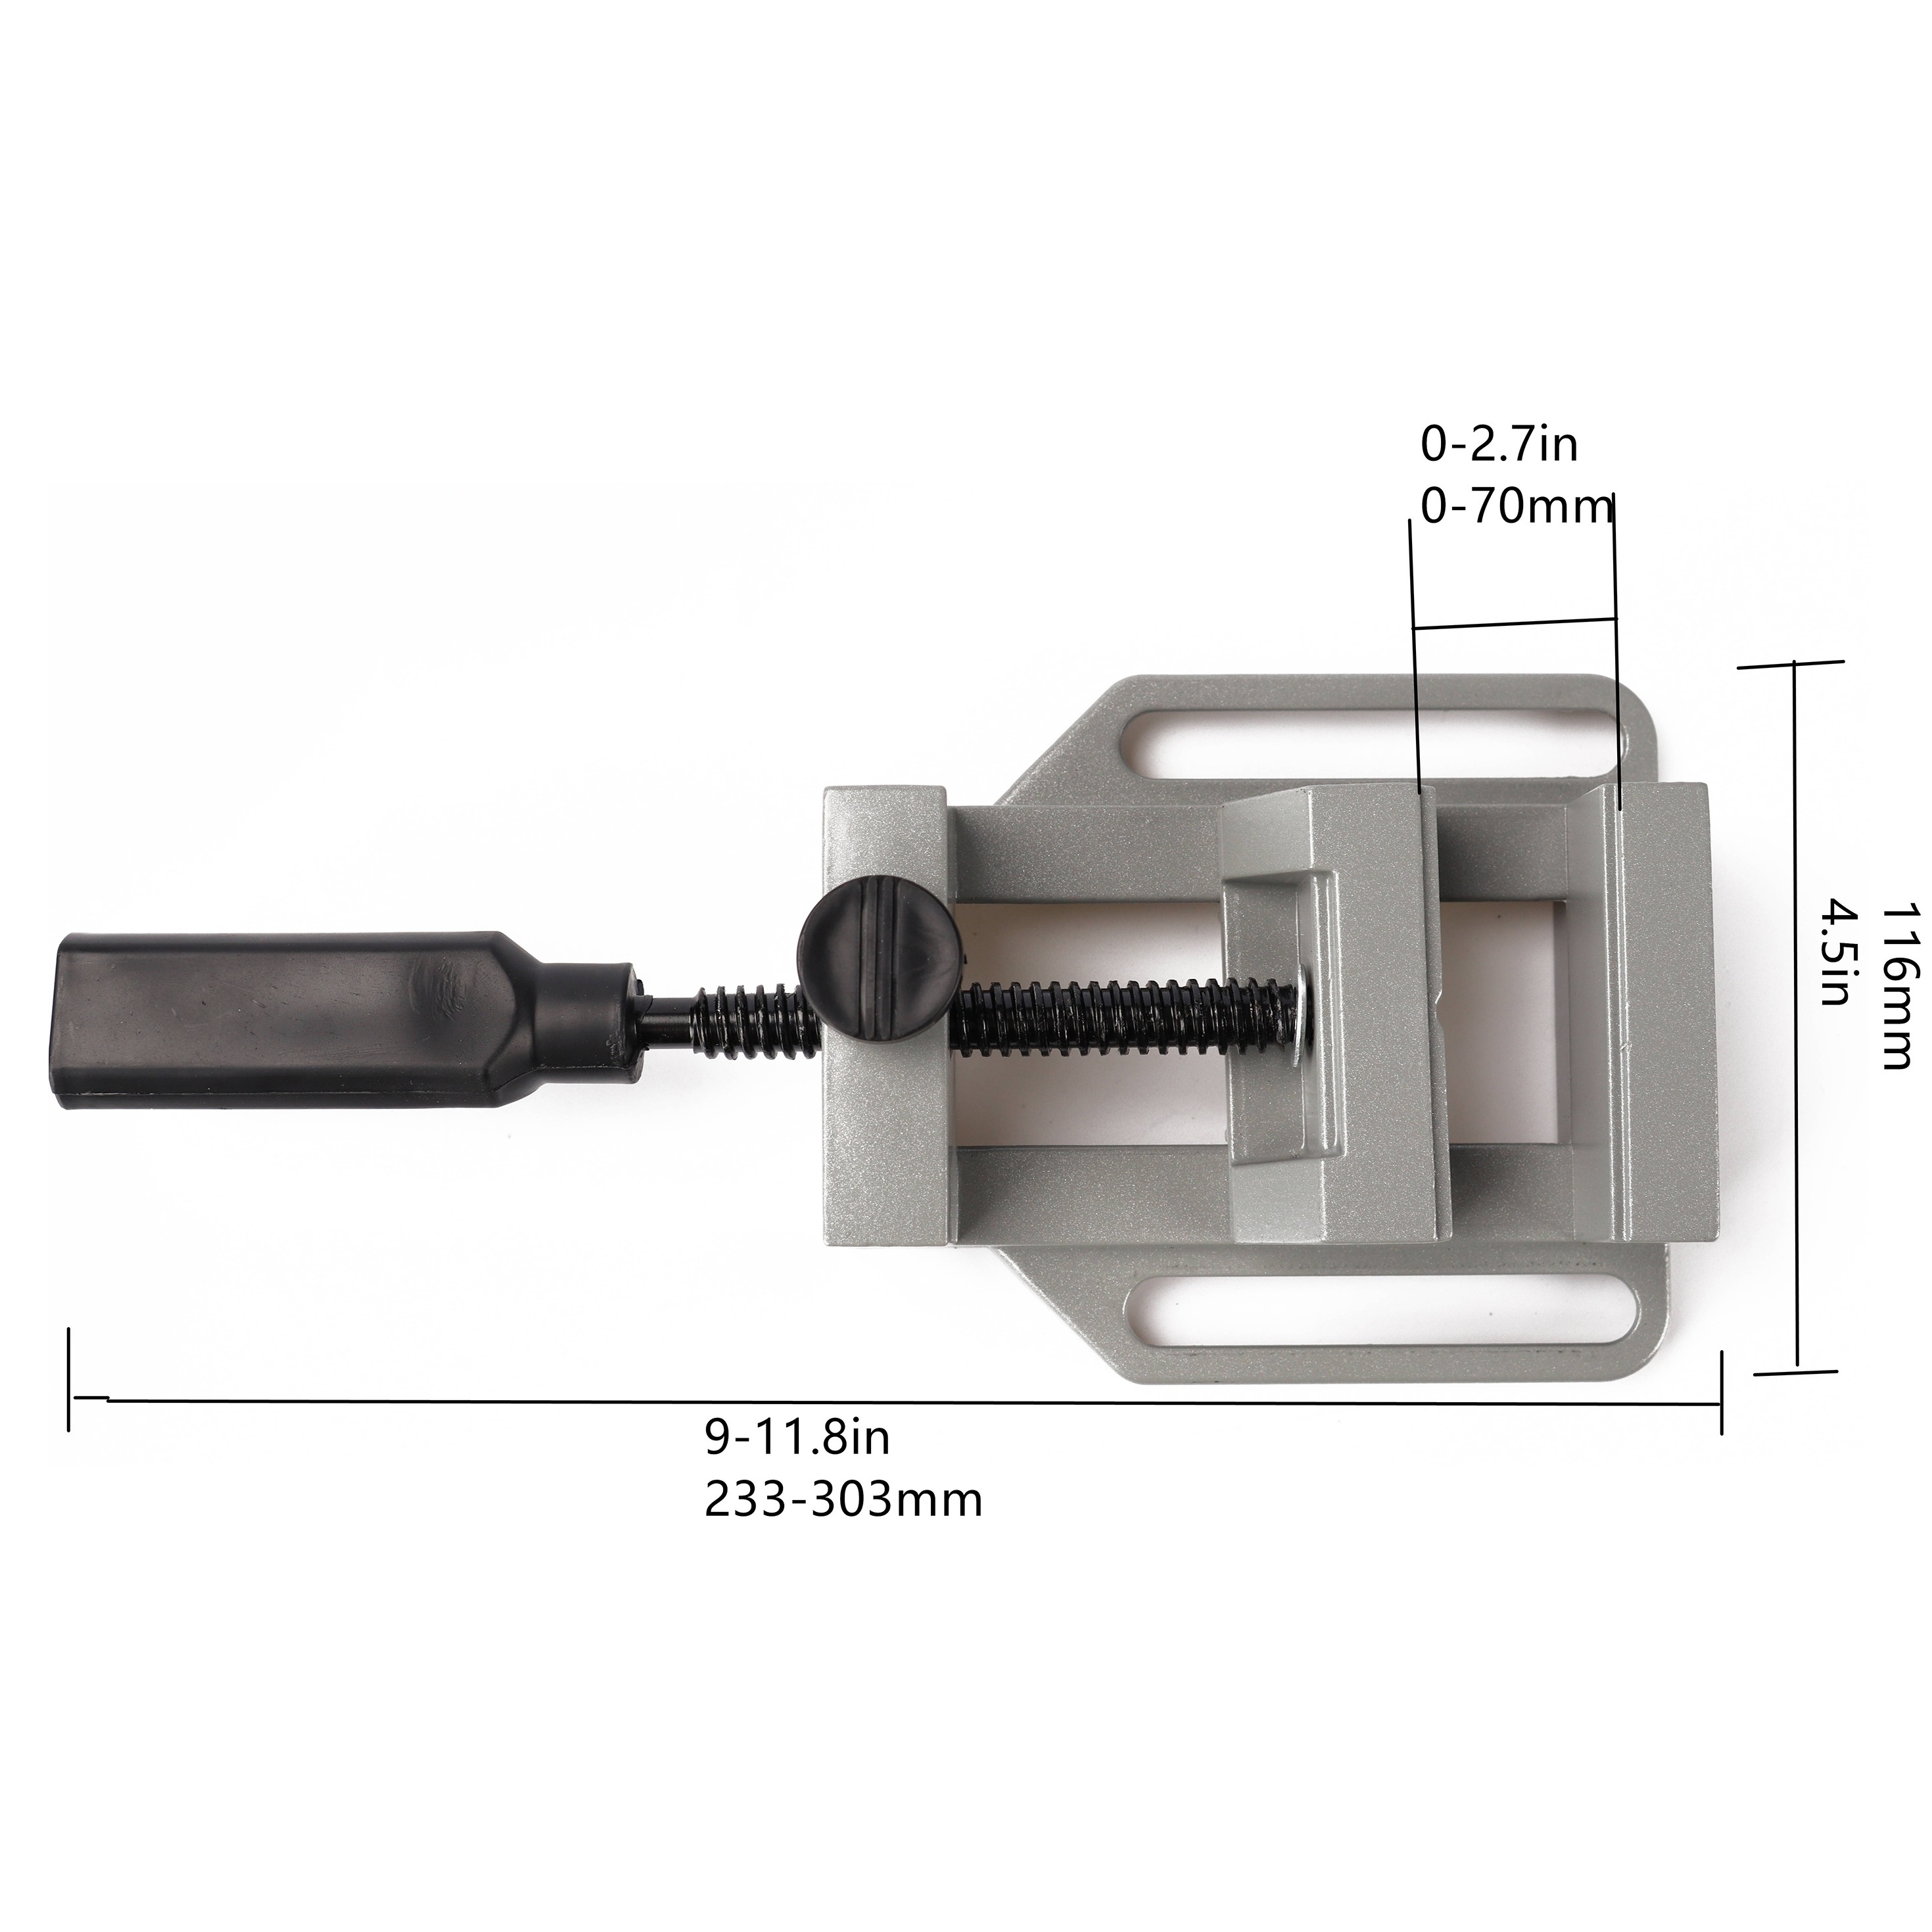  MARHD Soporte para taladro de presión, estable y preciso, mesa  de prensa de taladro giratorio de 0 a 90° en altura ajustable, taladro de  banco, operación simple para taladrar, cortar, moler (